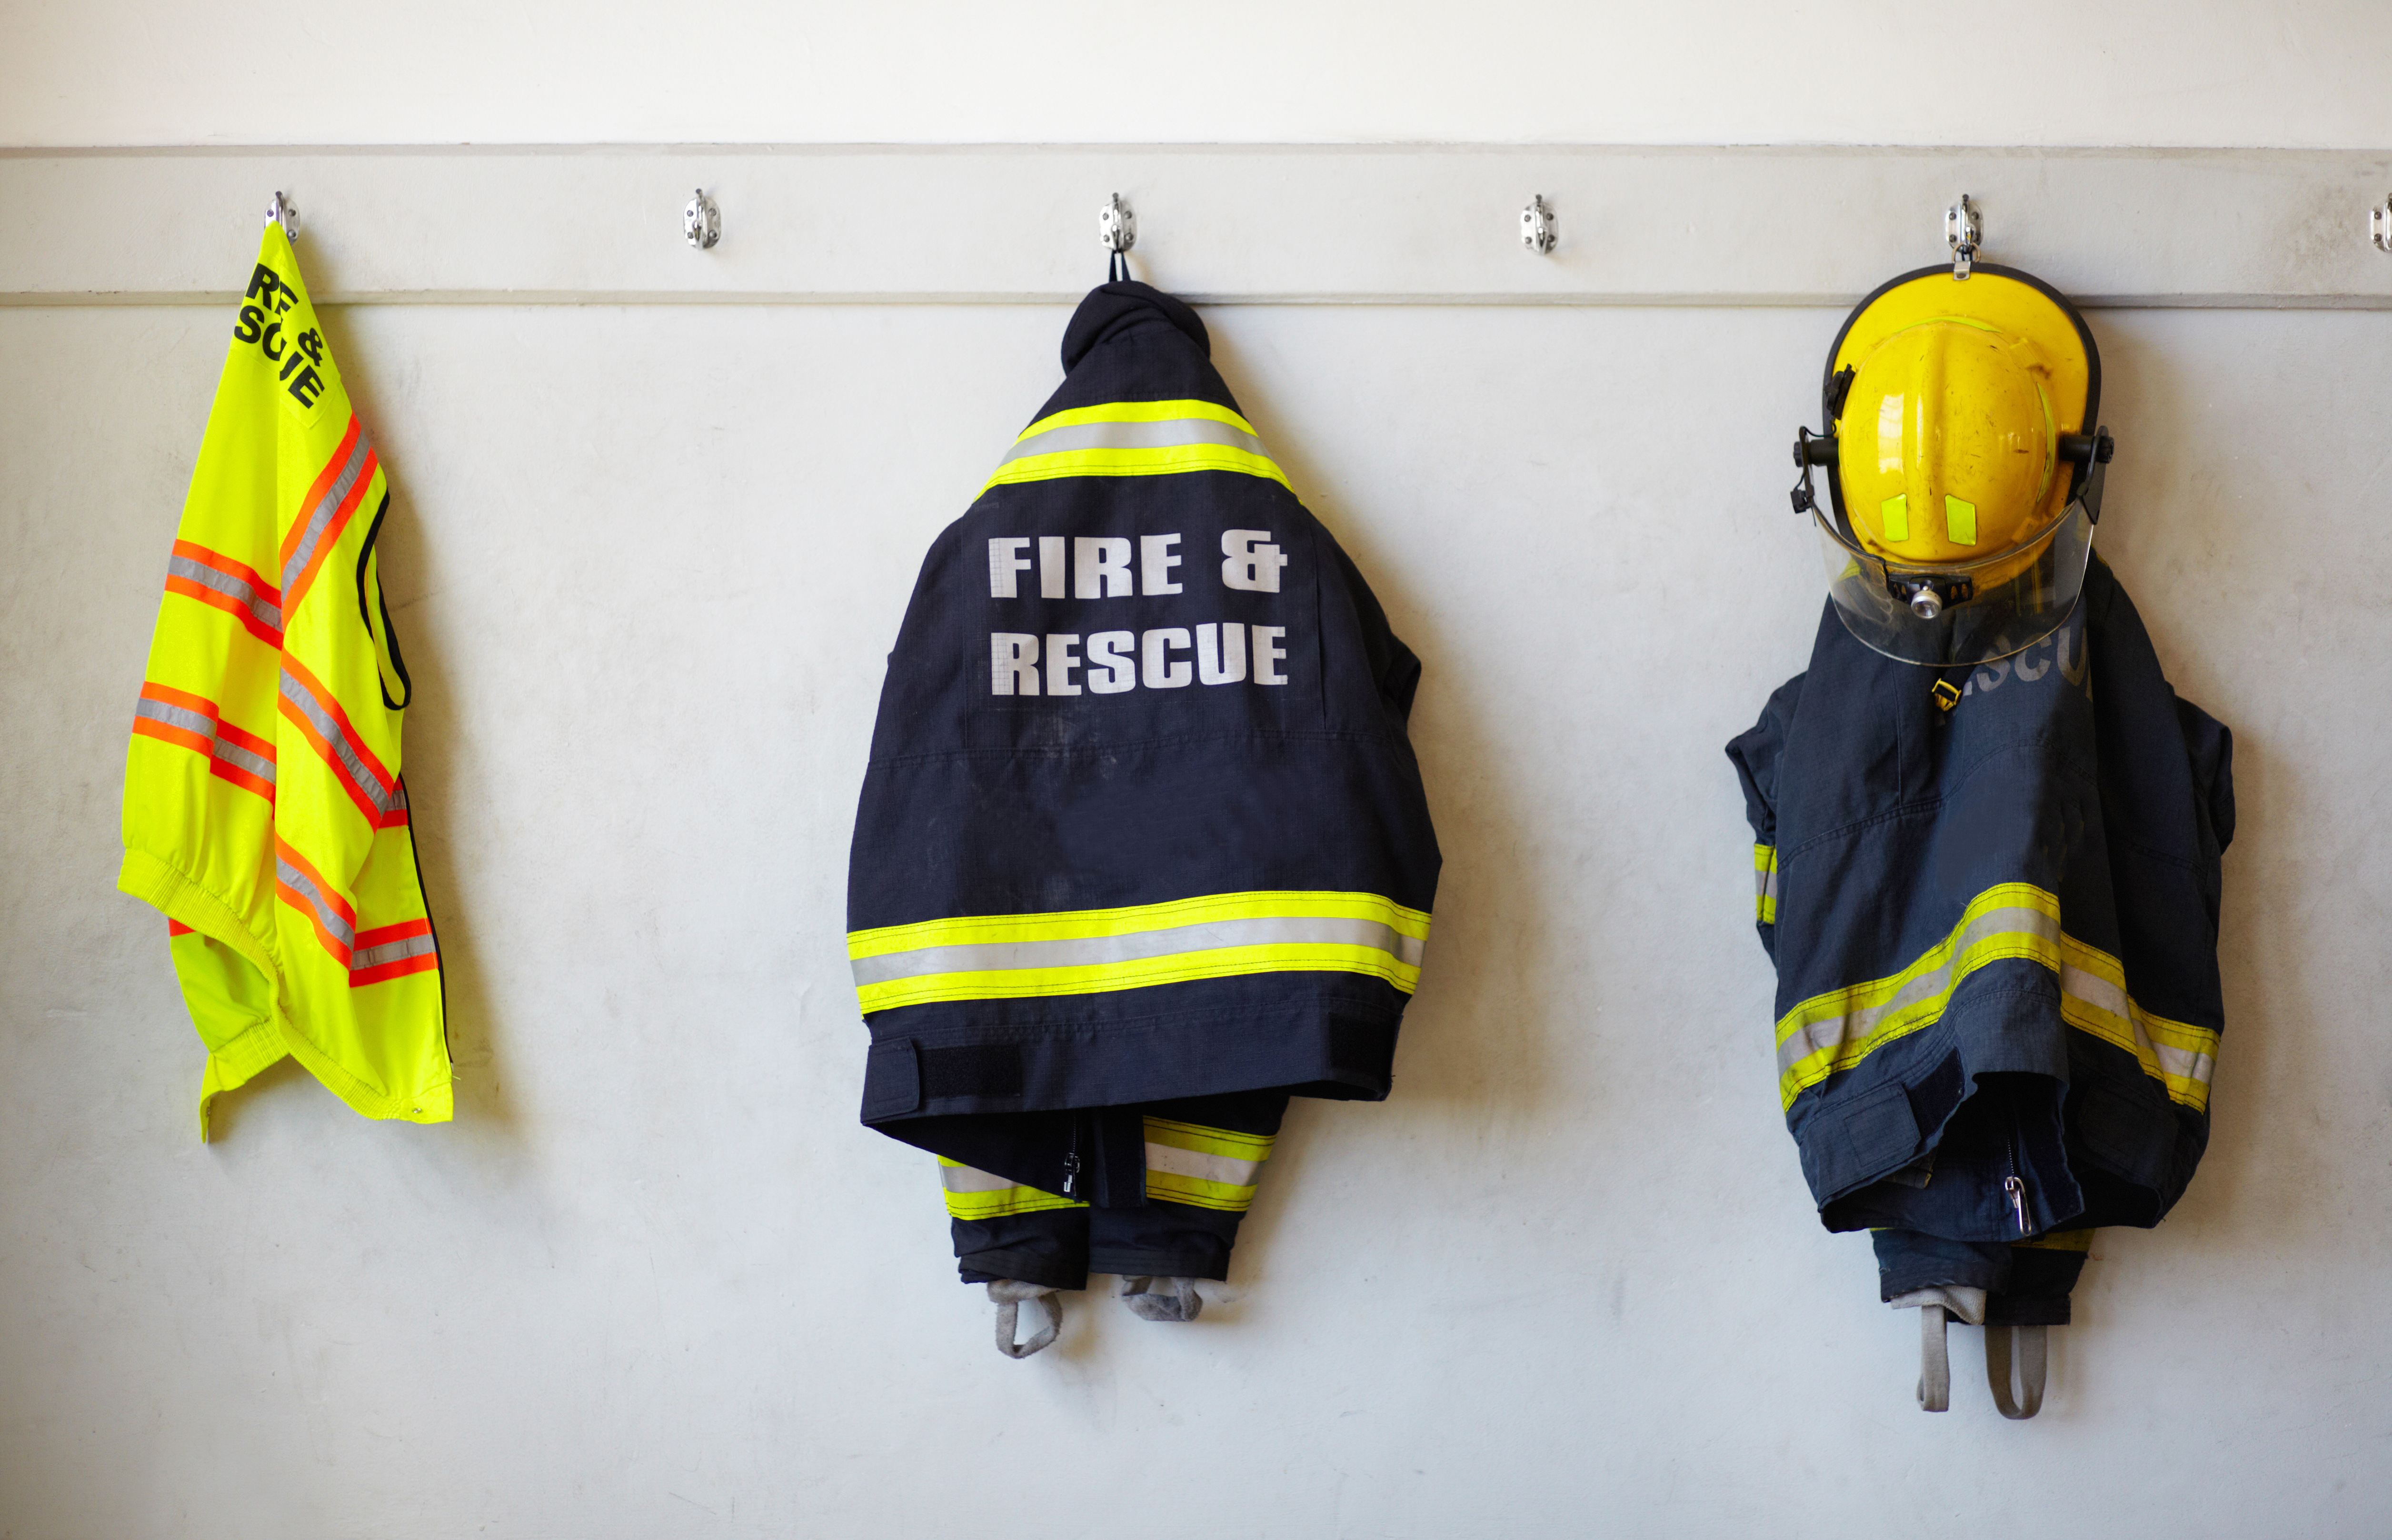 Jeder kann Brandschutzbeauftragter werden, wenn er die erforderliche Ausbildung und Qualifikationen hat.